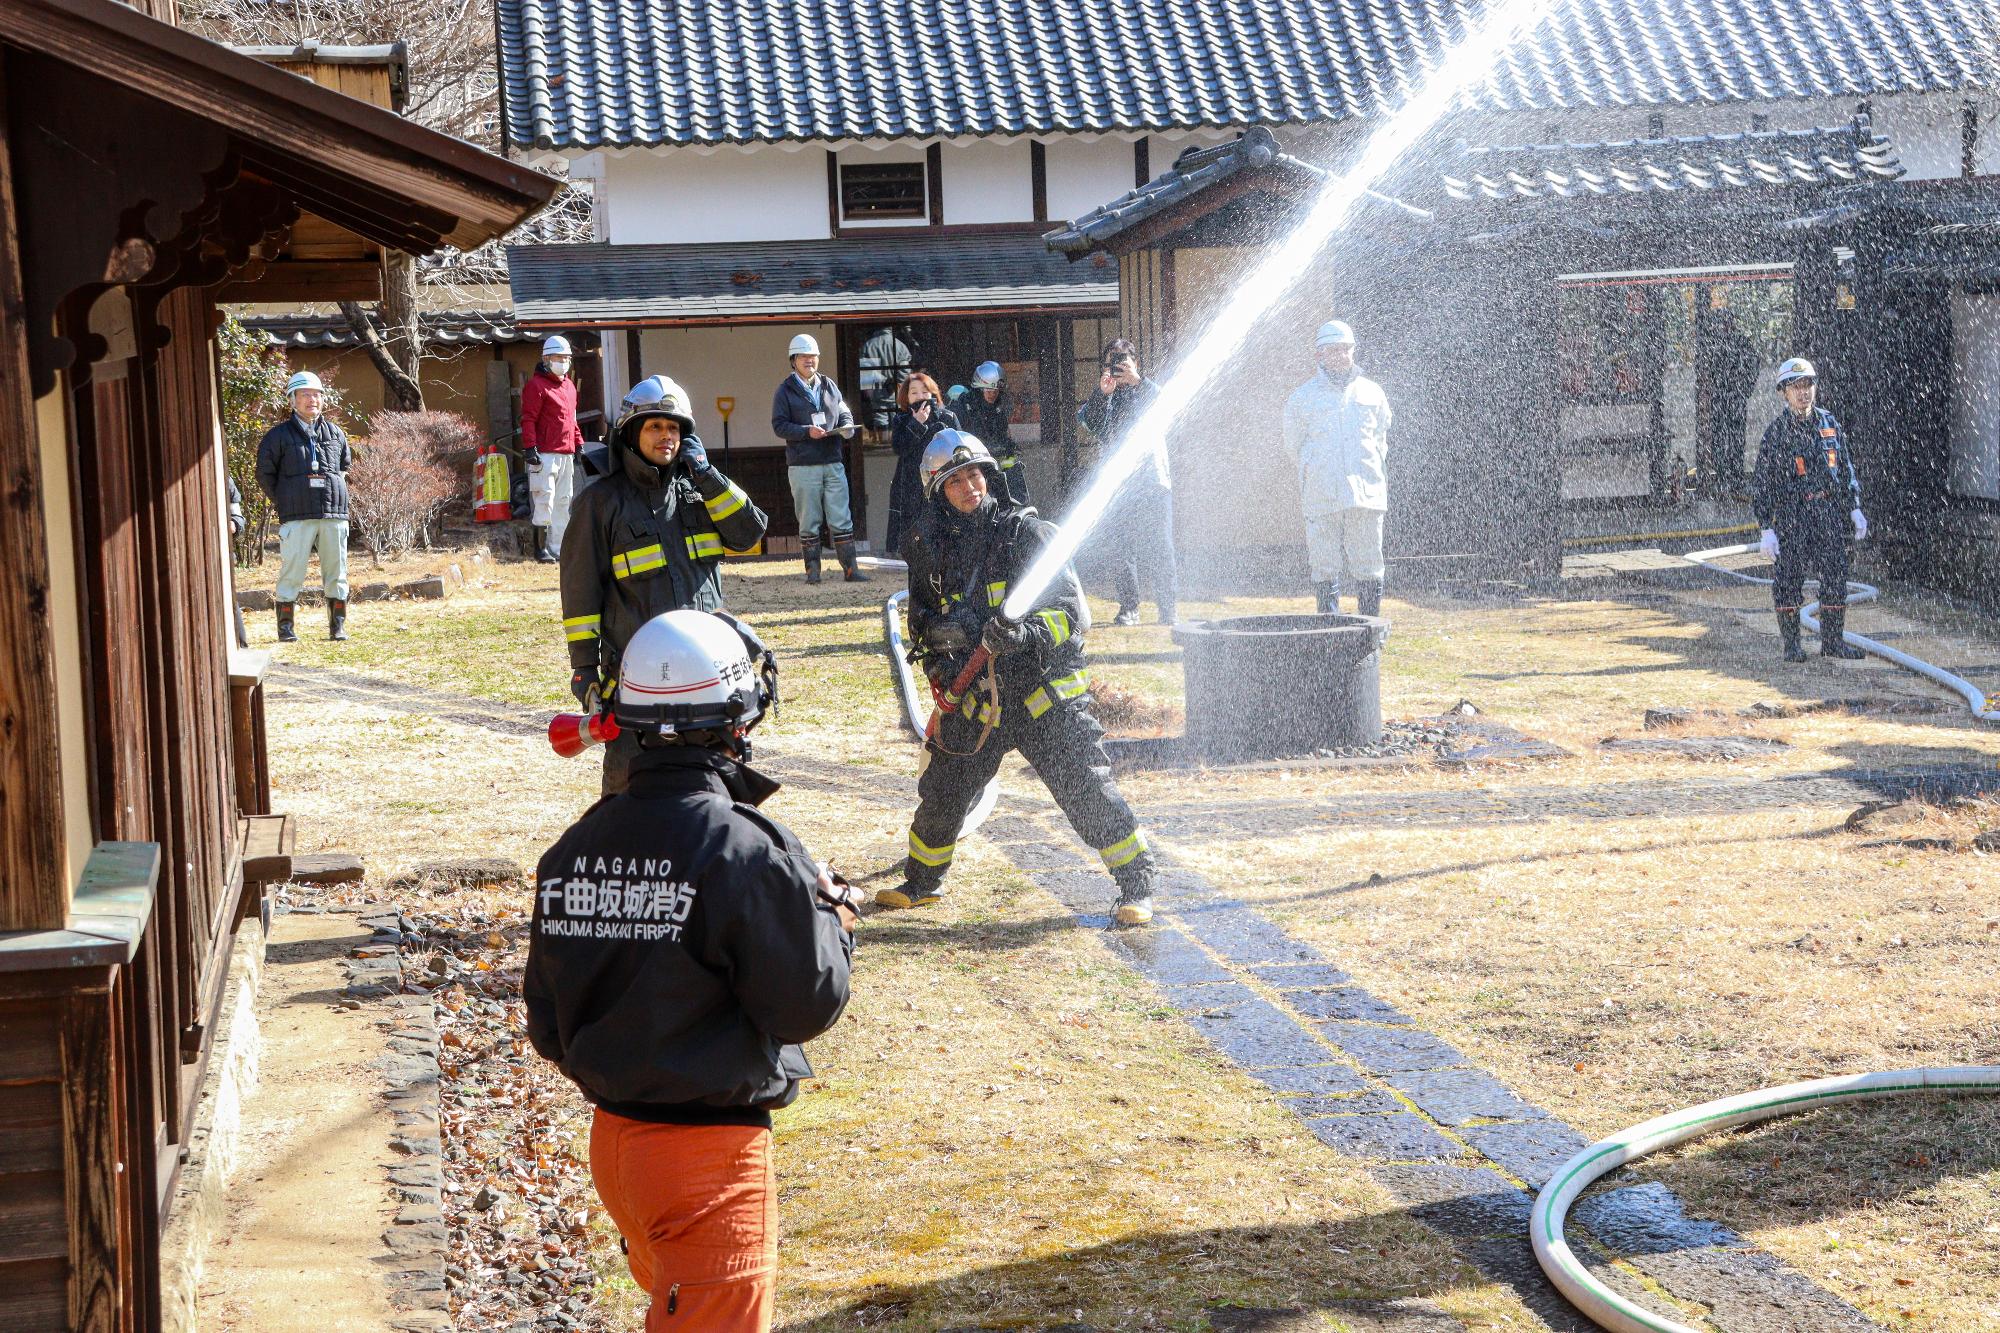 放水訓練で筒先をもって水を出す消防署隊員とその様子を広報で見守る参加者（約10人）